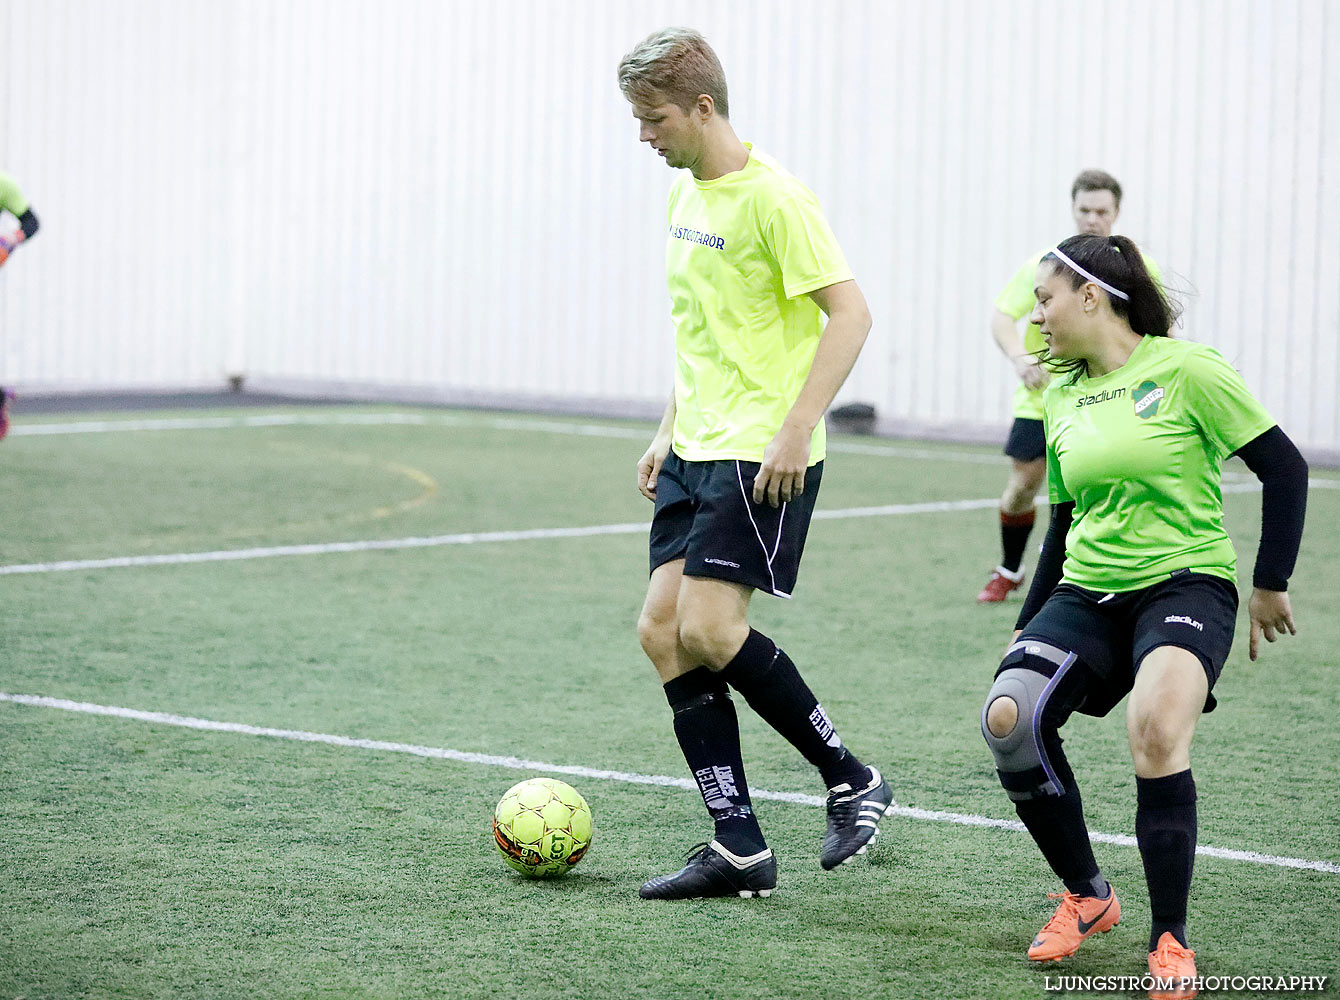 Skövde Soccer Championship,mix,Ulvahallen,Ulvåker,Sverige,Fotboll,,2016,143141